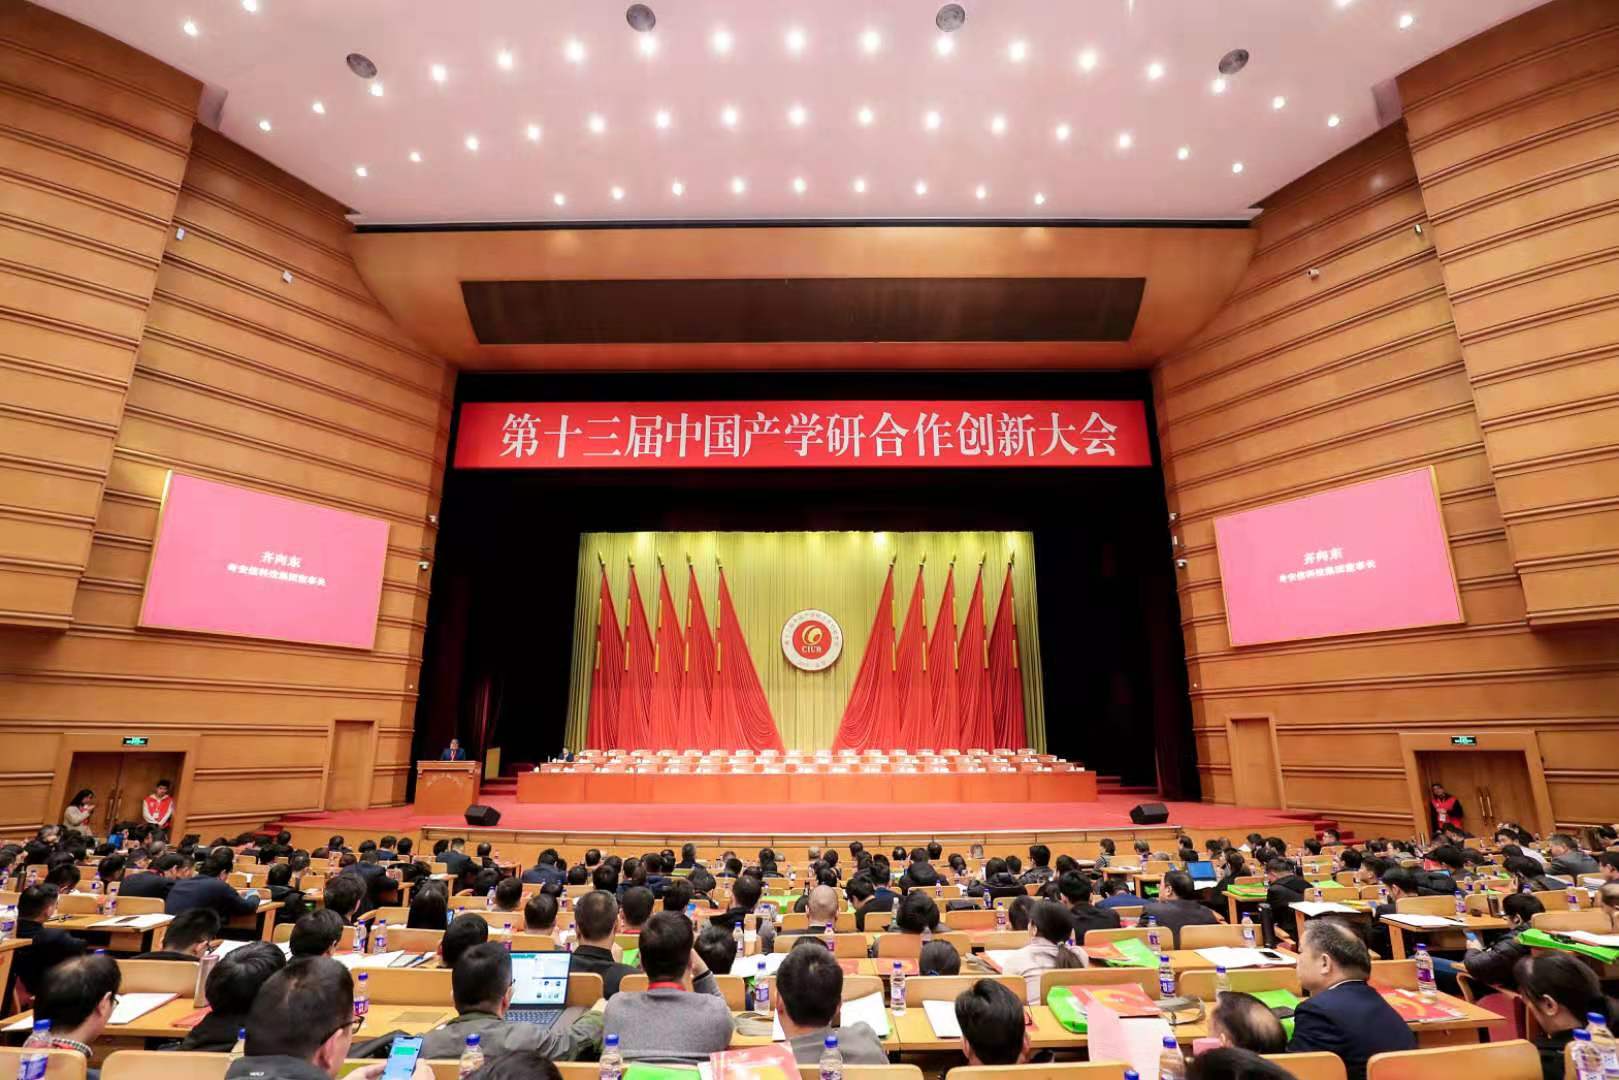 宝鹰集团获评“中国产学研合作创新示范企业”